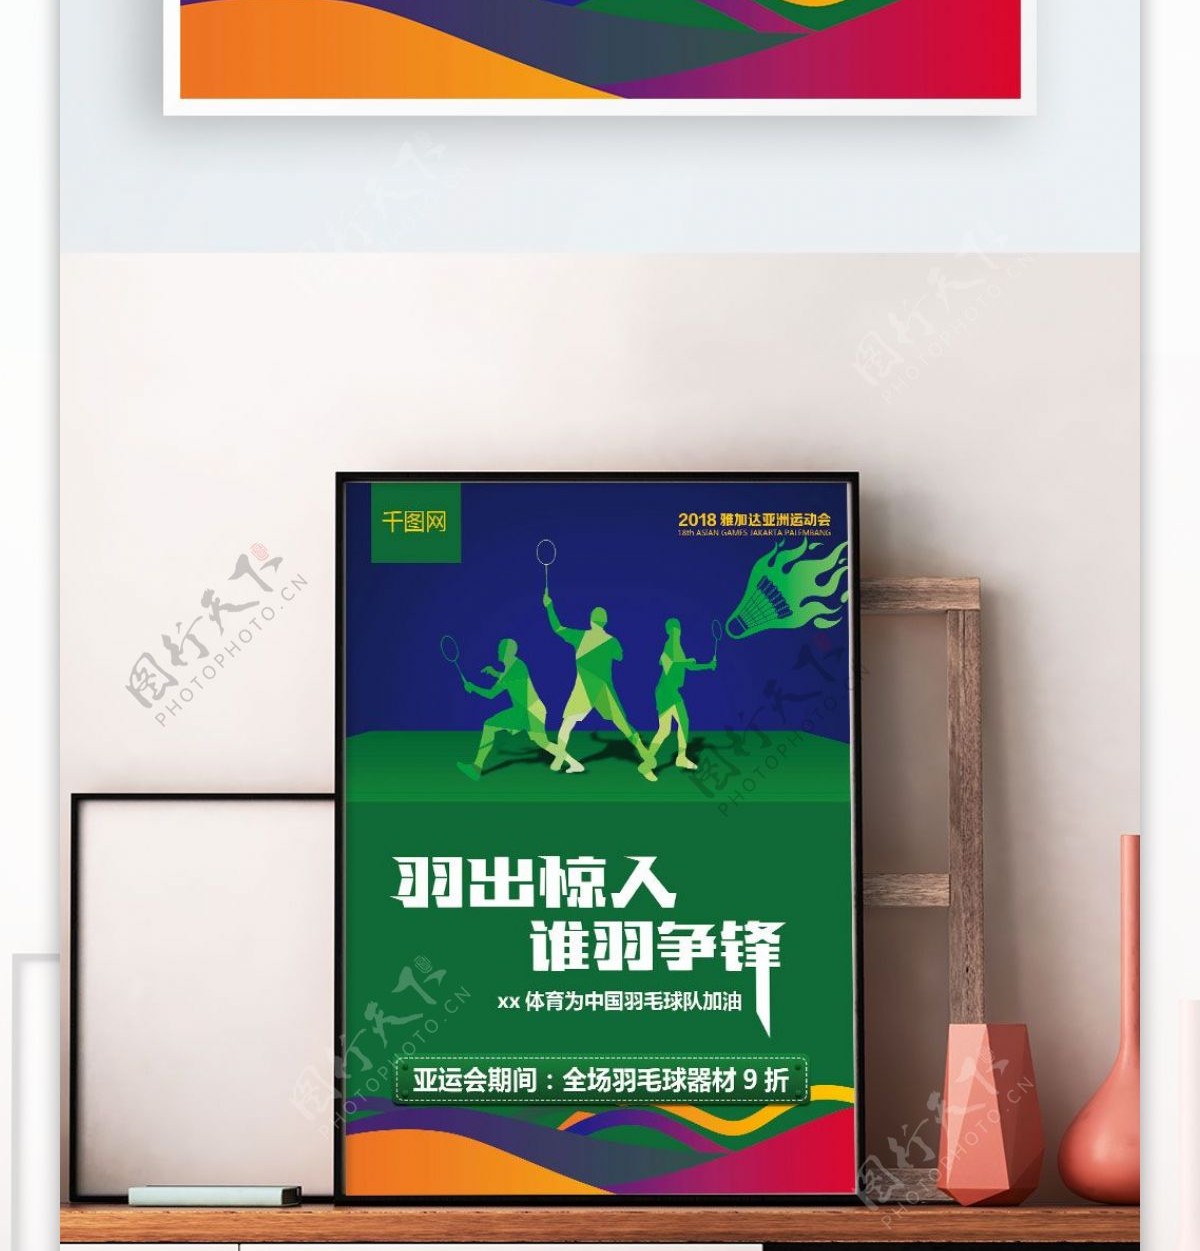 2018亚运会羽毛球海报